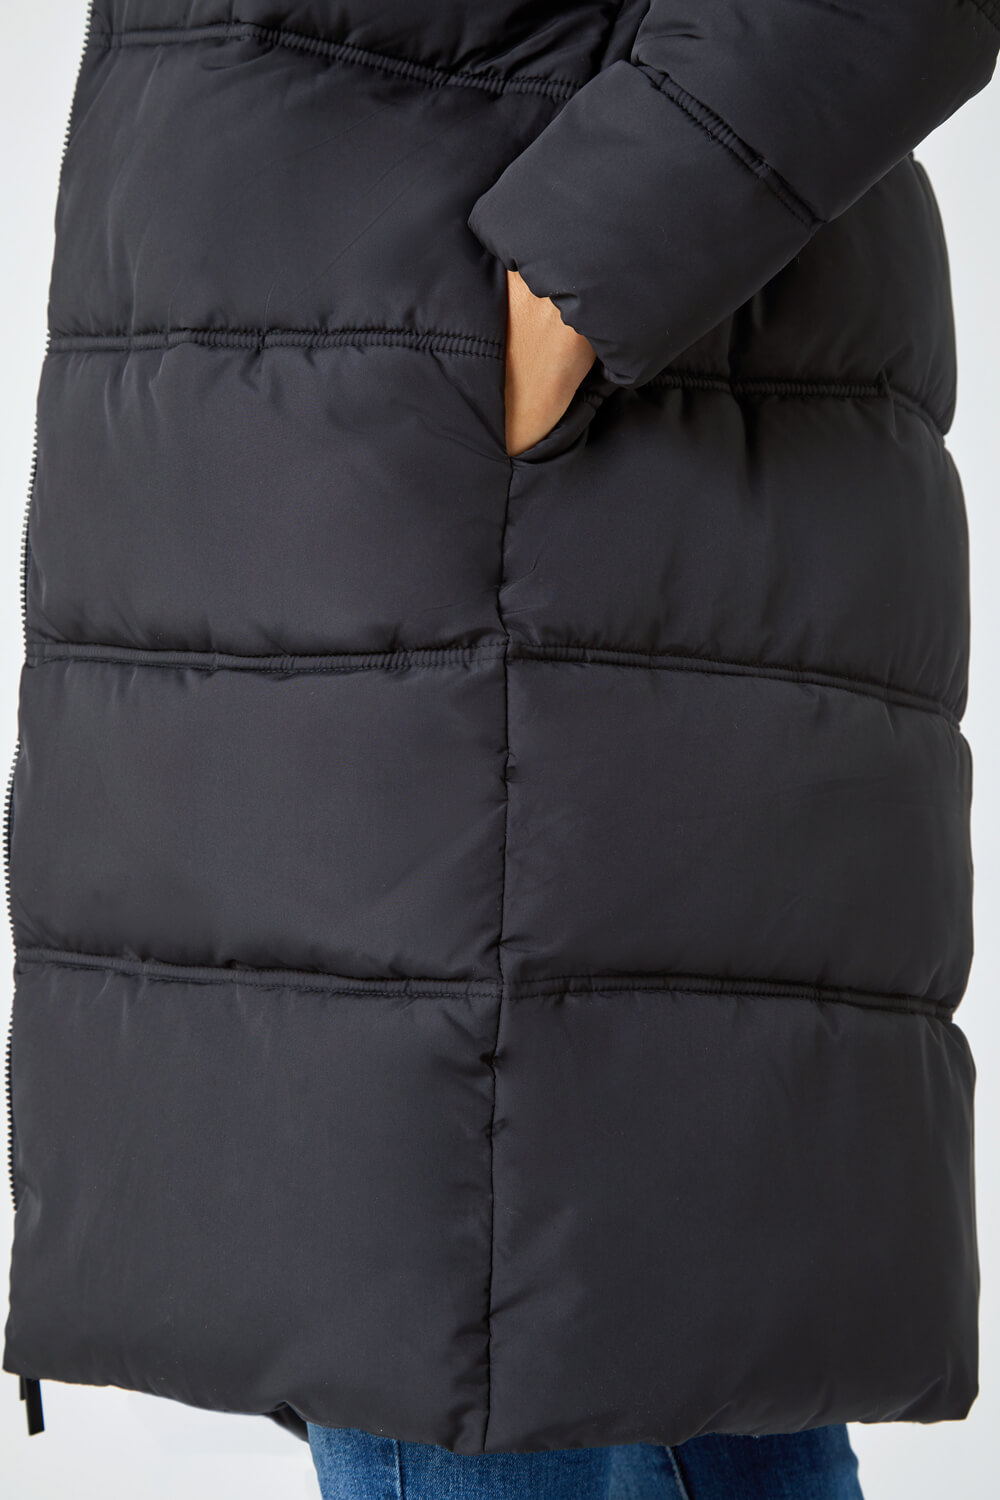 Black Longline Padded Coat, Image 5 of 5